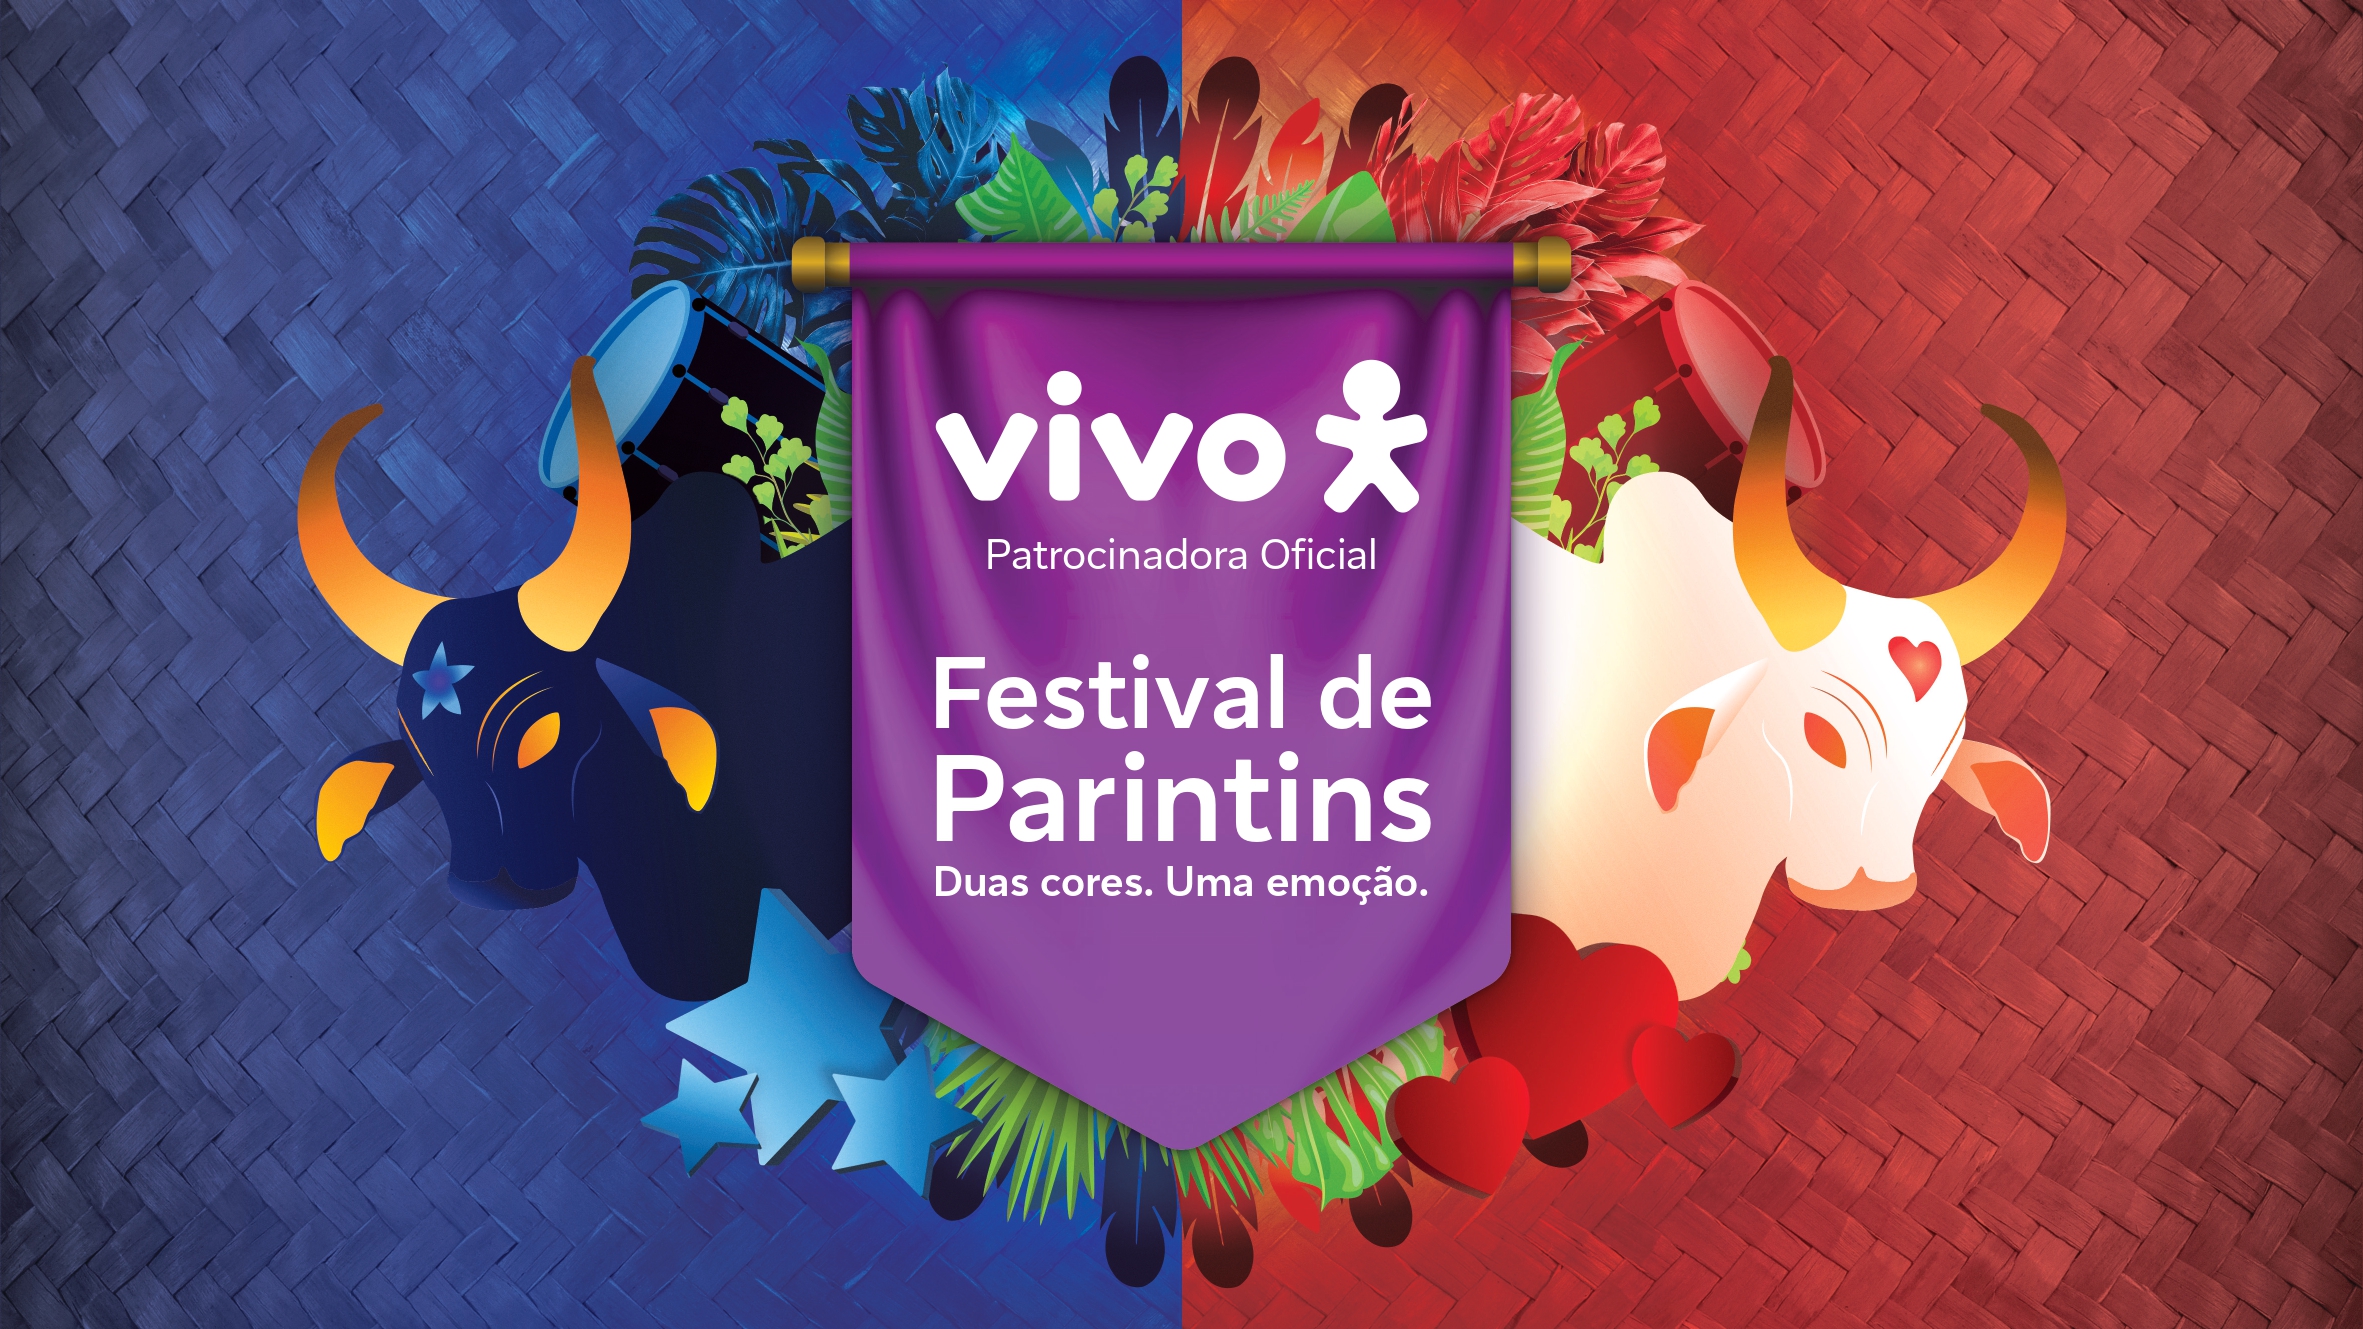 Representação da ativação da vivo no festival de parintins, uma das tendências do perfil do consumidor brasileiro. 